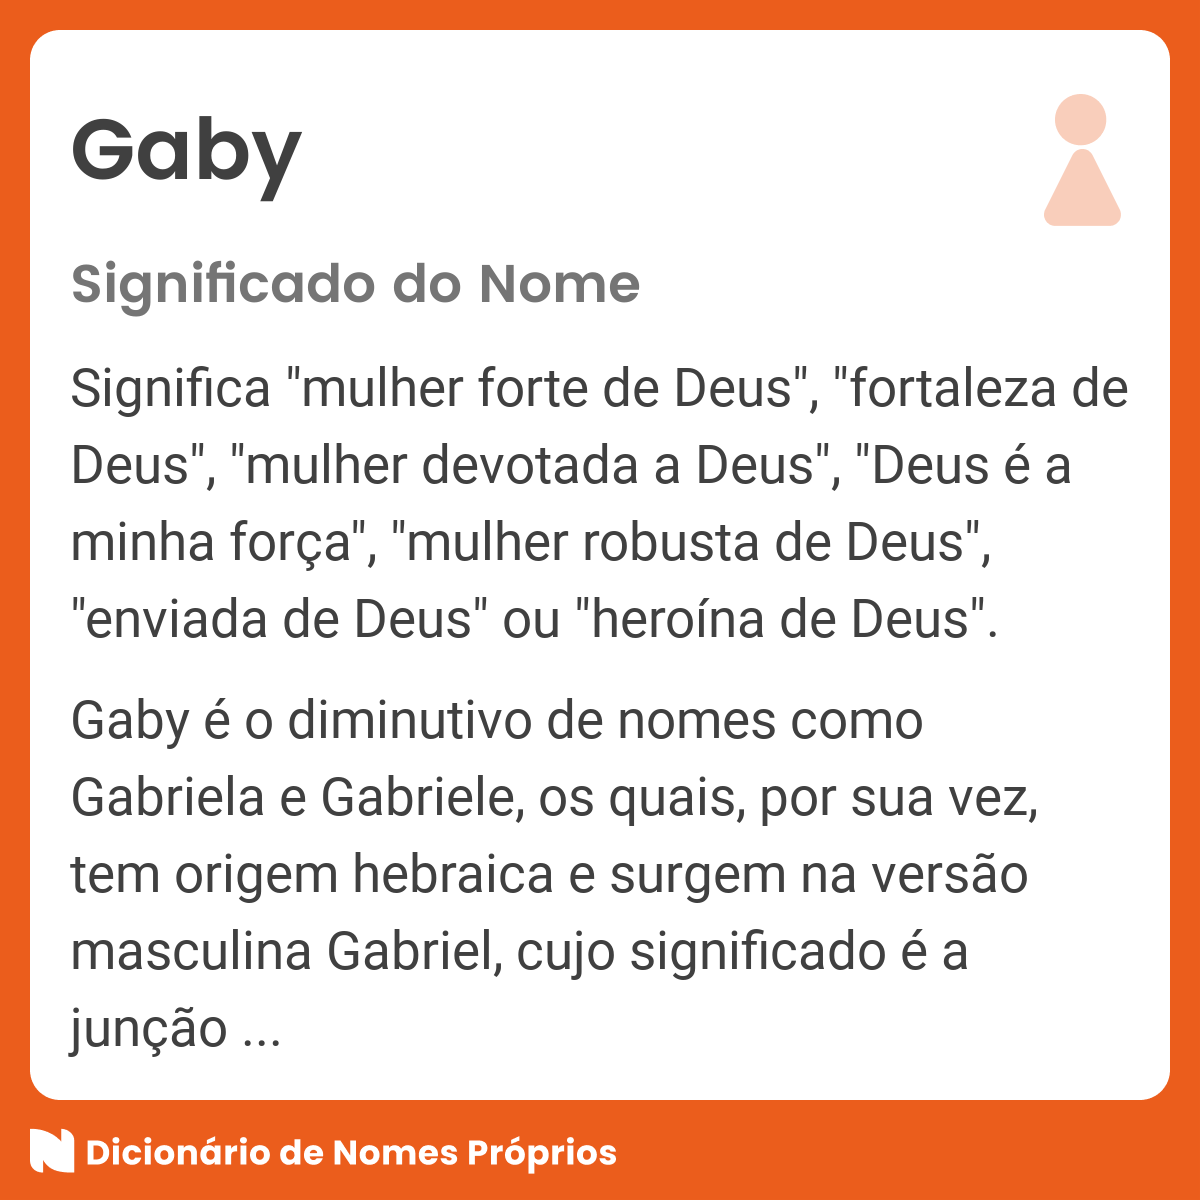 Significado do nome Gaby - Dicionário de Nomes Próprios